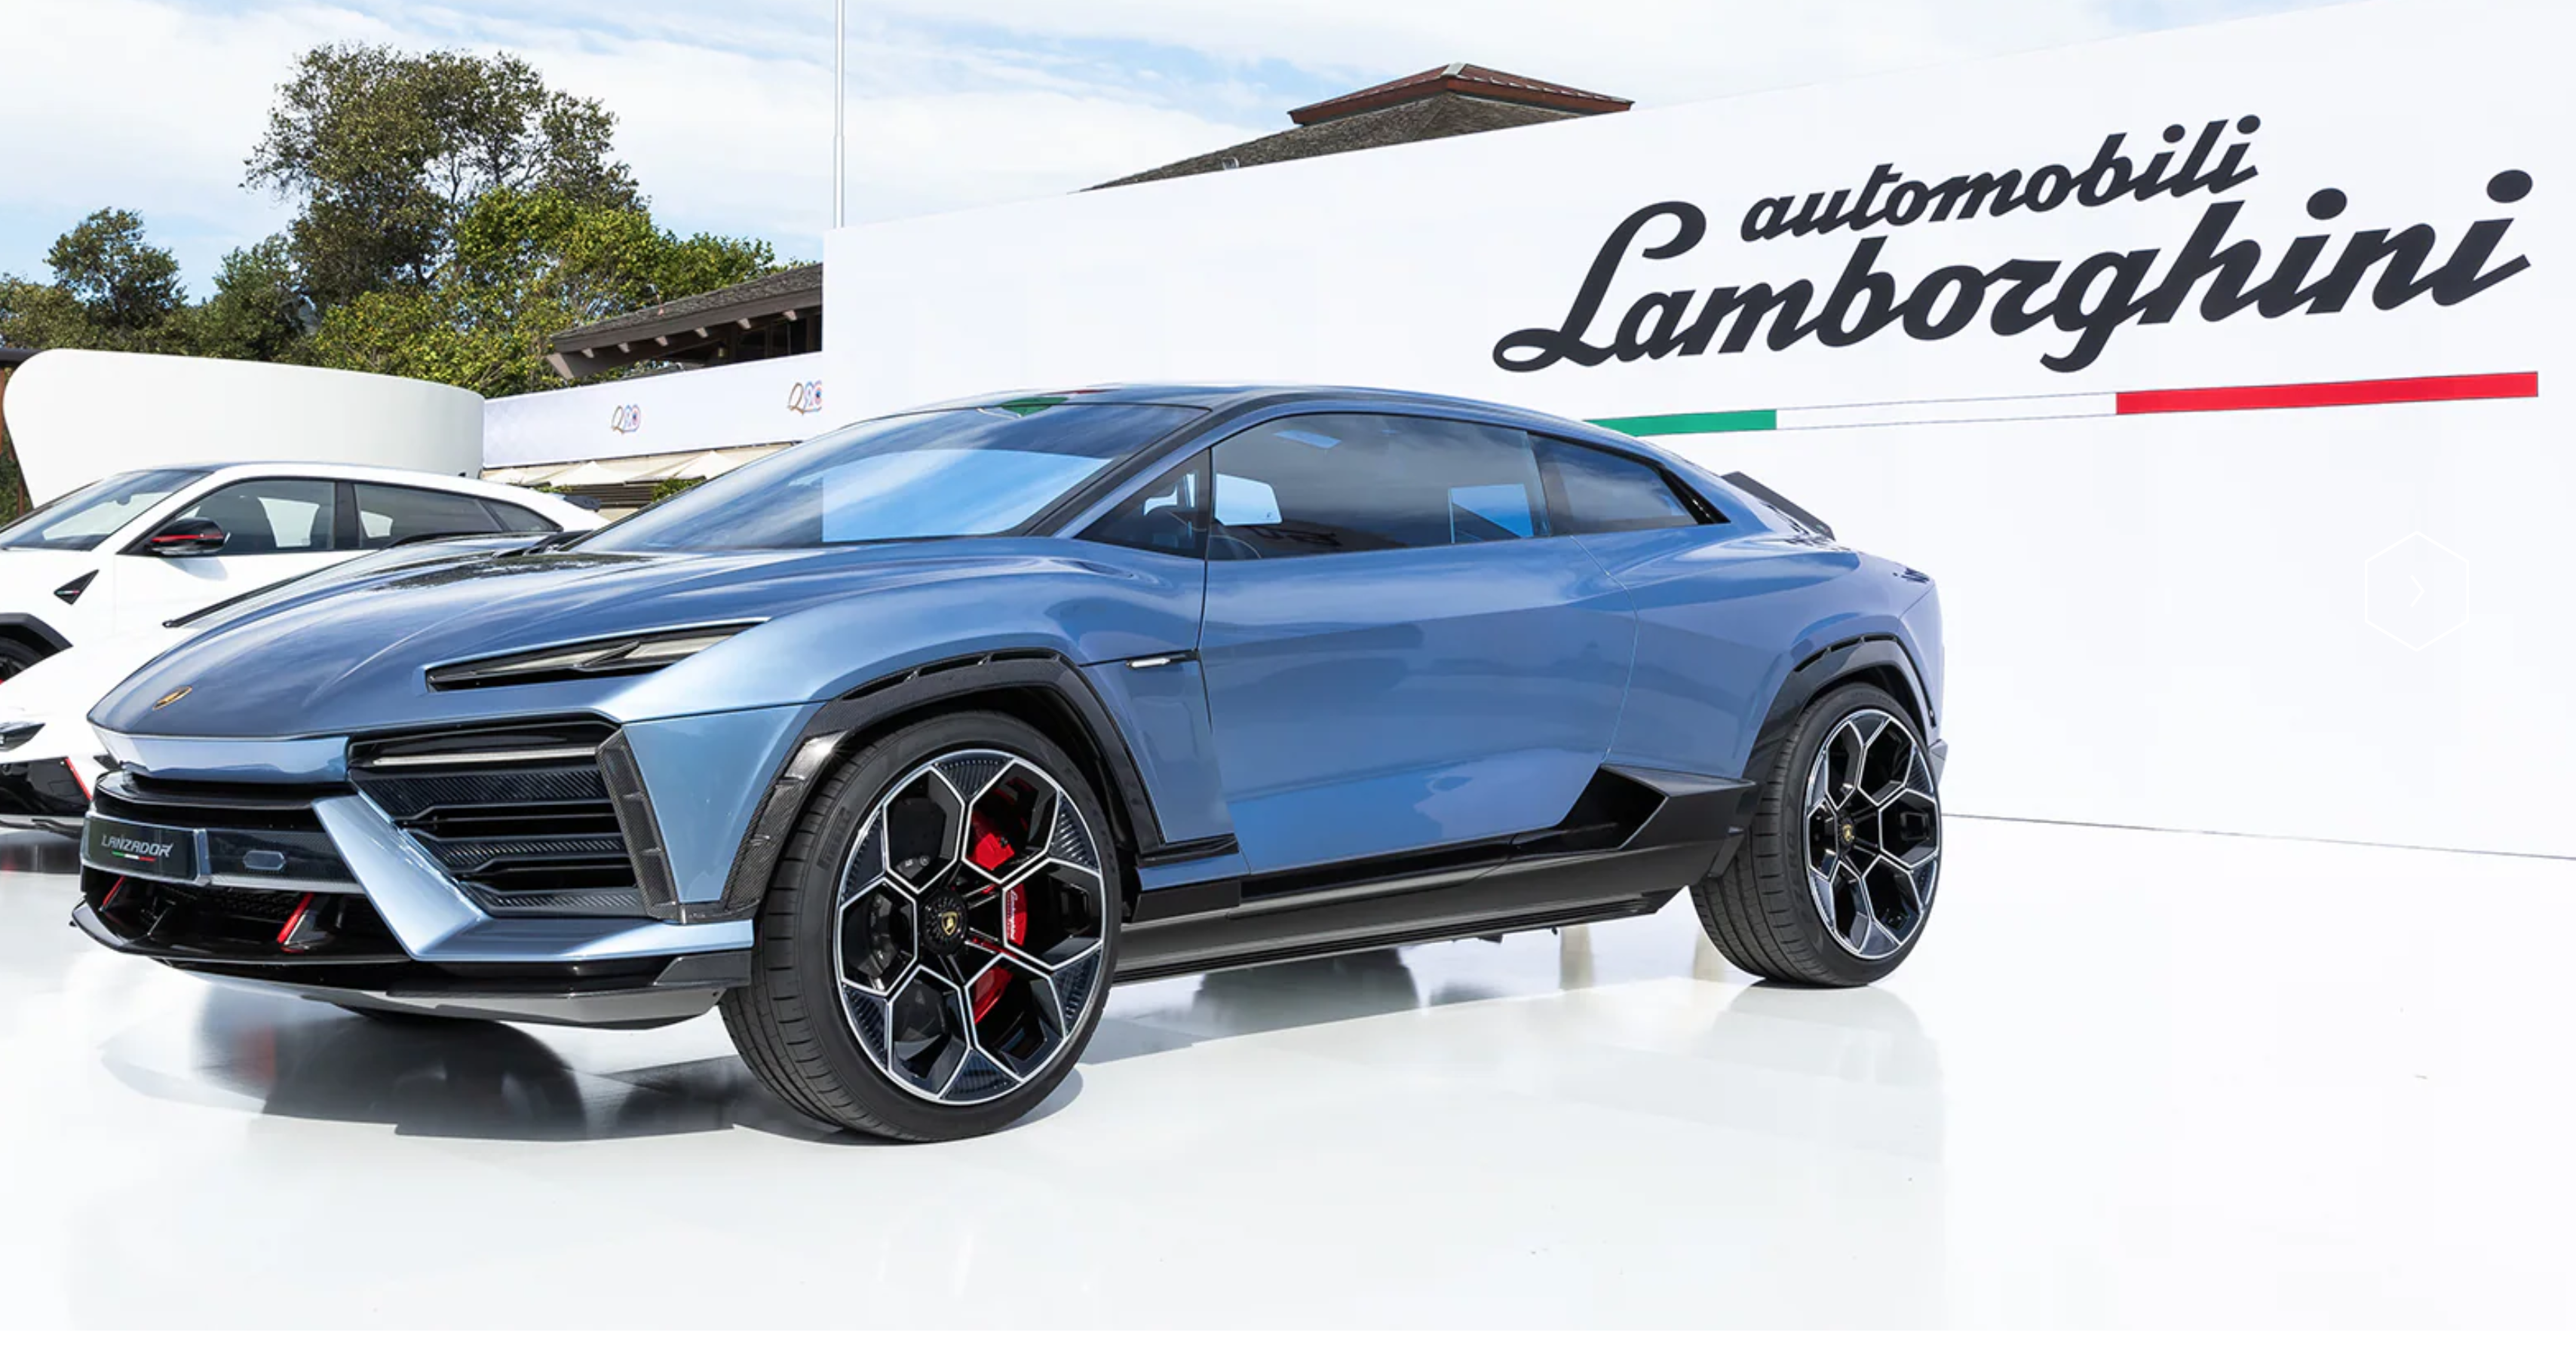 Lamborghini présente le prototype de son premier modèle électrique